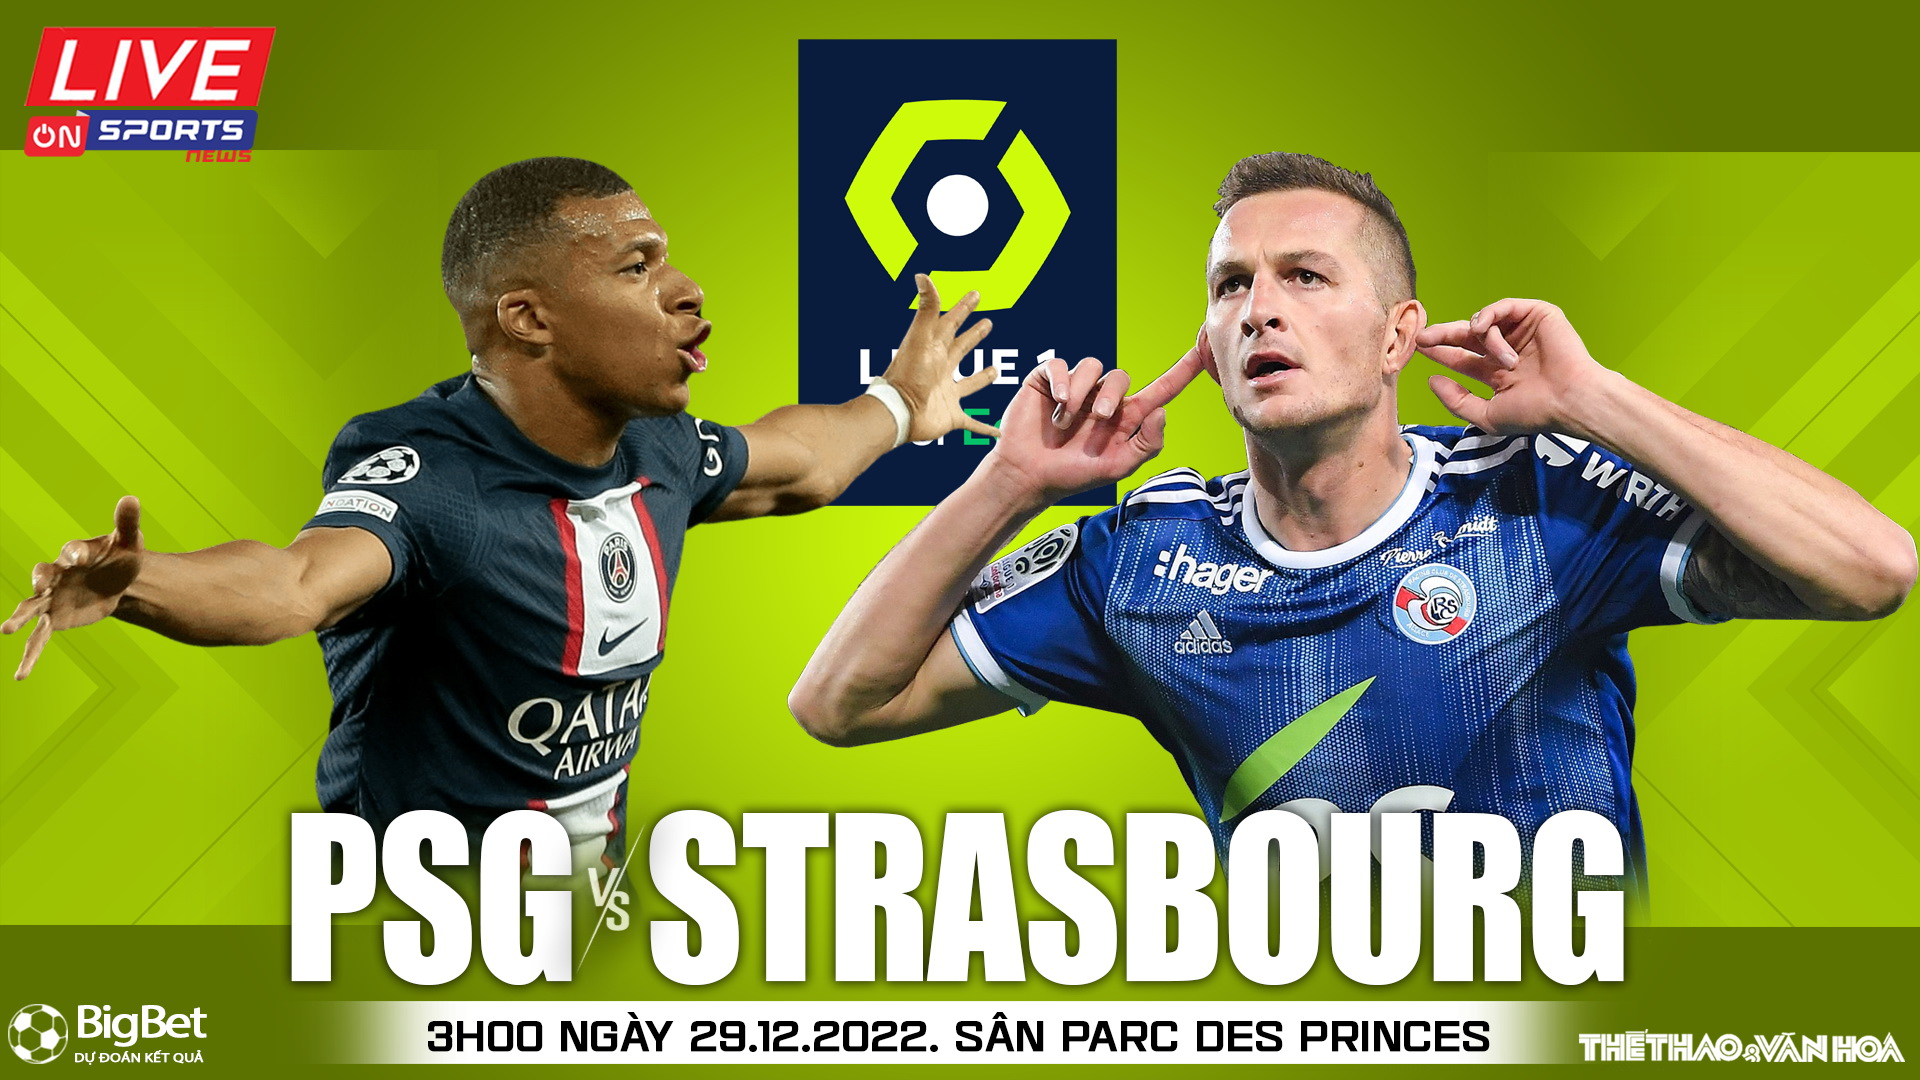 Nhận định bóng đá PSG vs Strasbourg Mbappe thay Messi tỏa sáng